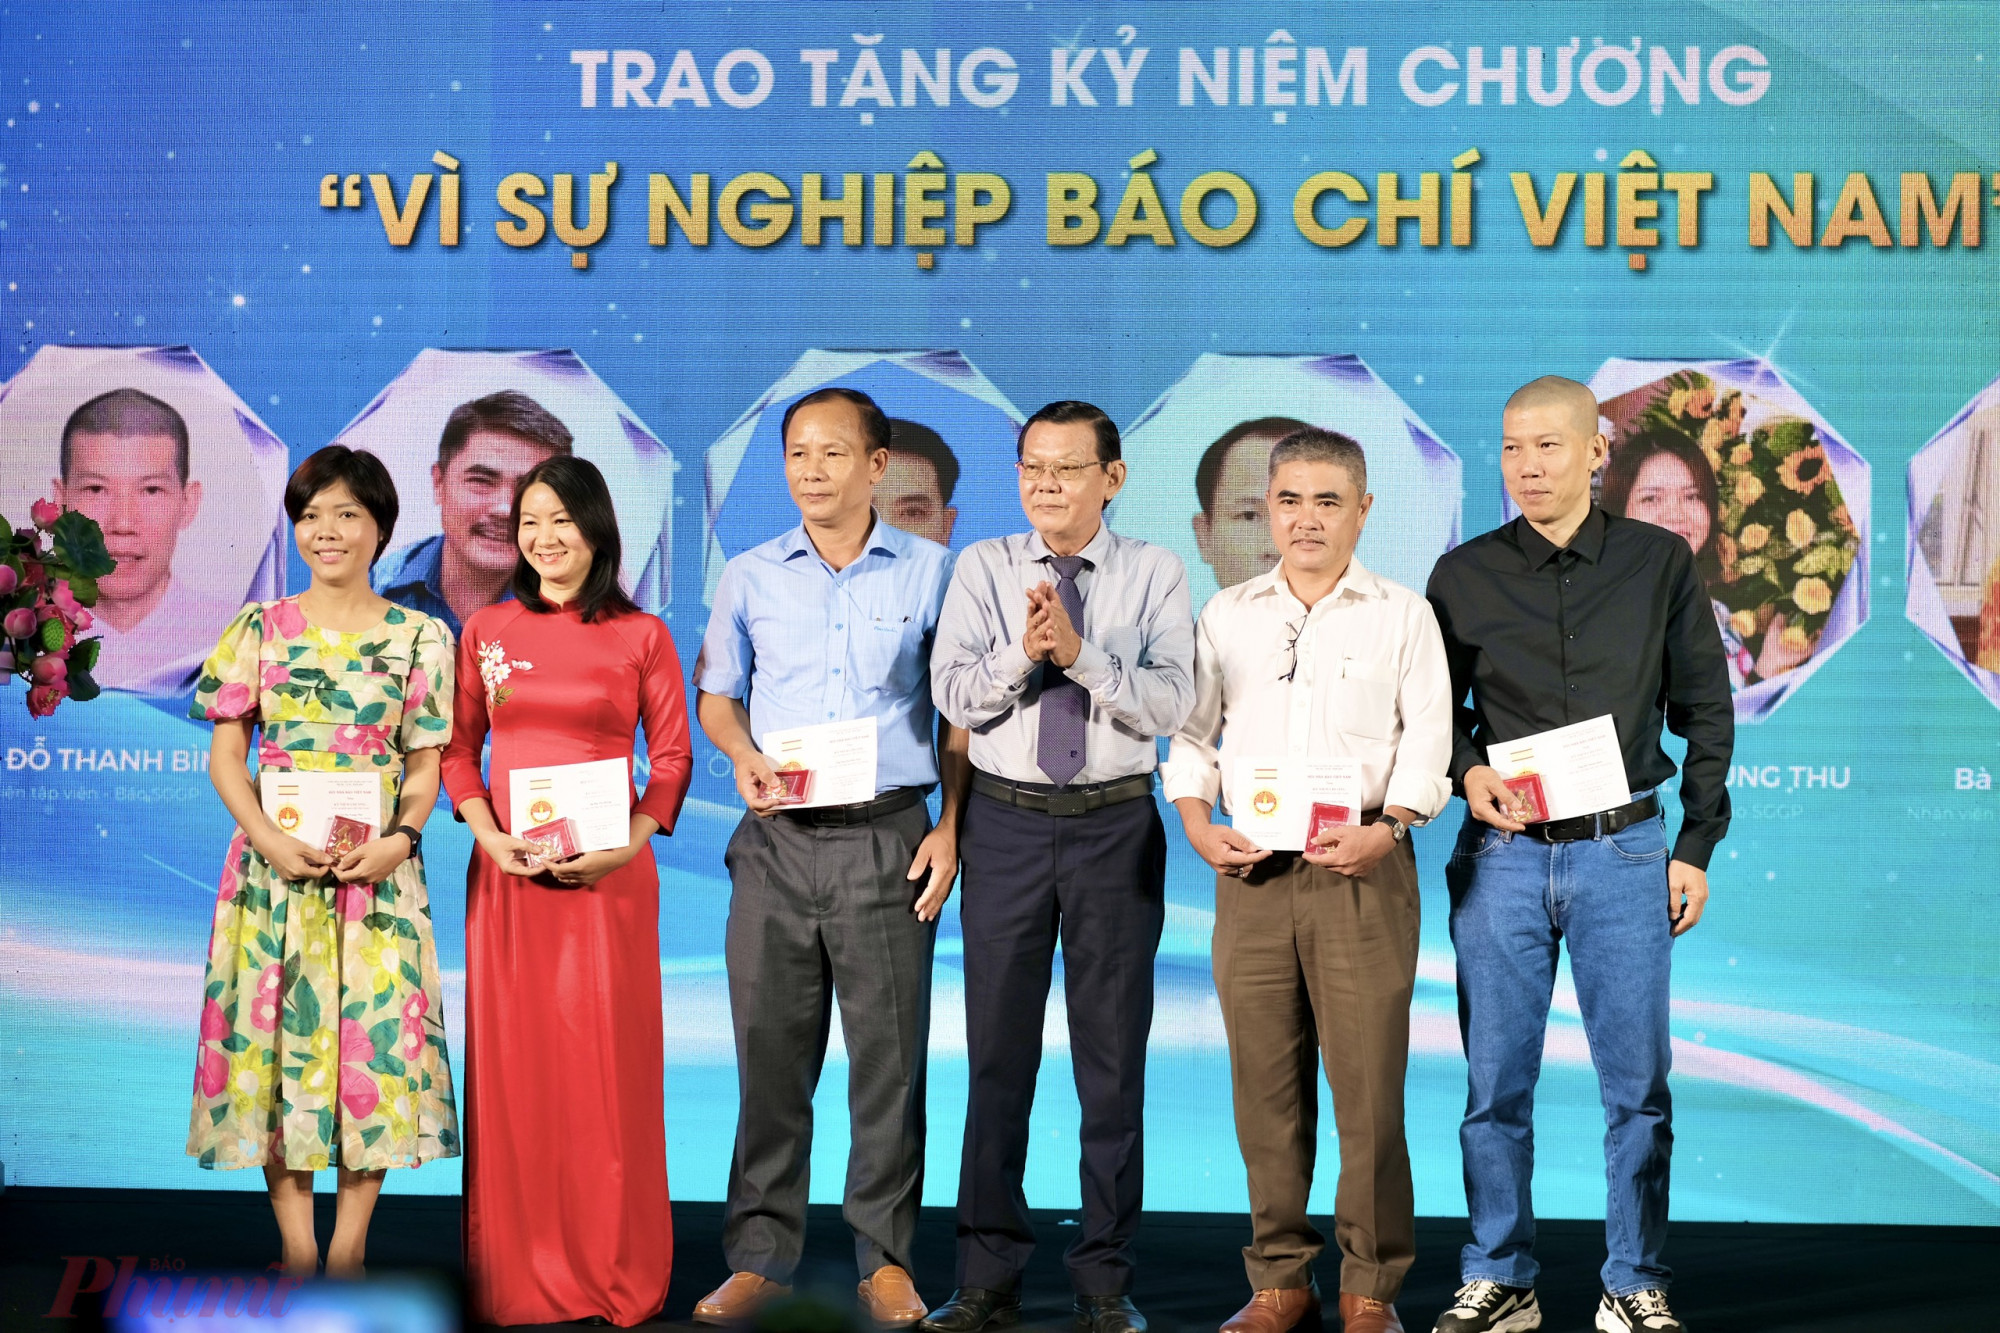 Đại diện Hội Nhà báo Việt Nam đã trao tặng Kỷ niệm chương “Vì sự nghiệp Báo chí Việt Nam” trong lĩnh vực báo chí chuyên nghiệp đã công tác 15-20 năm cho 6 nhà báo của Báo Sài Gòn Giải Phóng